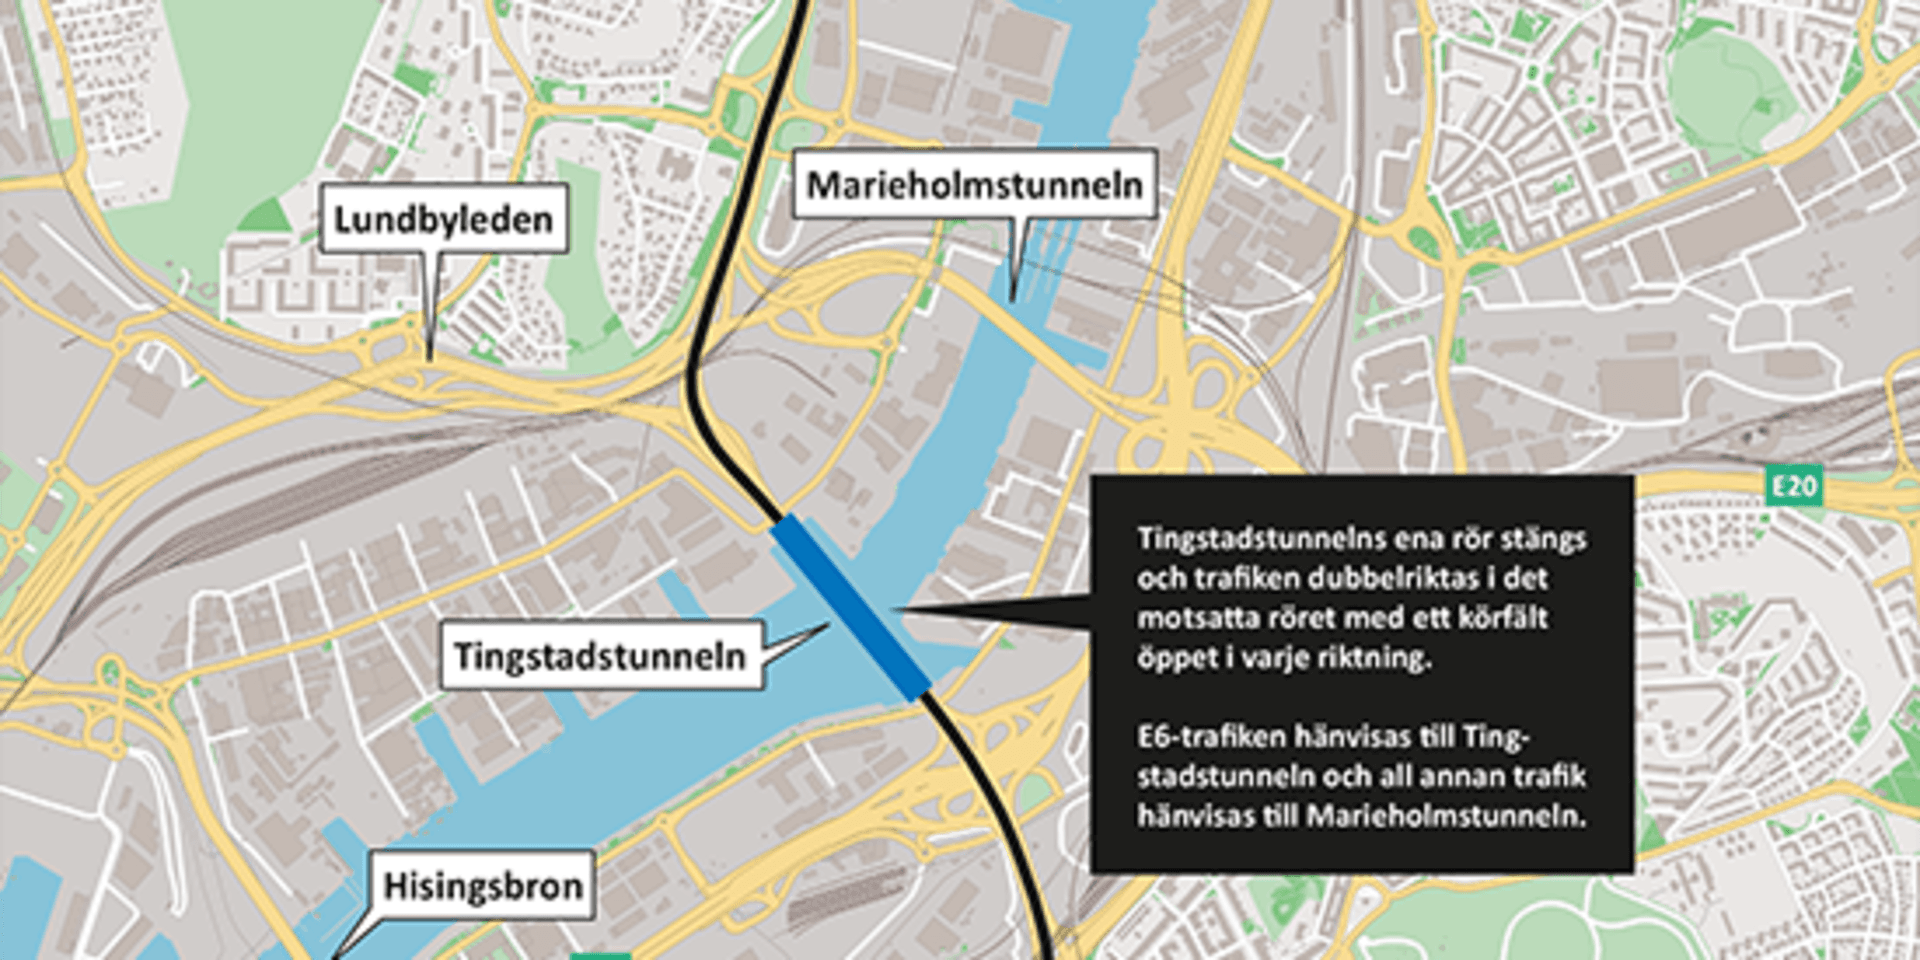 Trafiken längs E6 kommer fortfarande att köra genom Tingstadstunneln medan all trafik via Lundbyleden, E20 och E45 istället leds om till Marieholmstunneln. Den som kommer söderifrån på E6 eller från väg 40 och ska till Hisingen uppmanas därför att ta Söder-/Västerleden via Älvsborgsbron